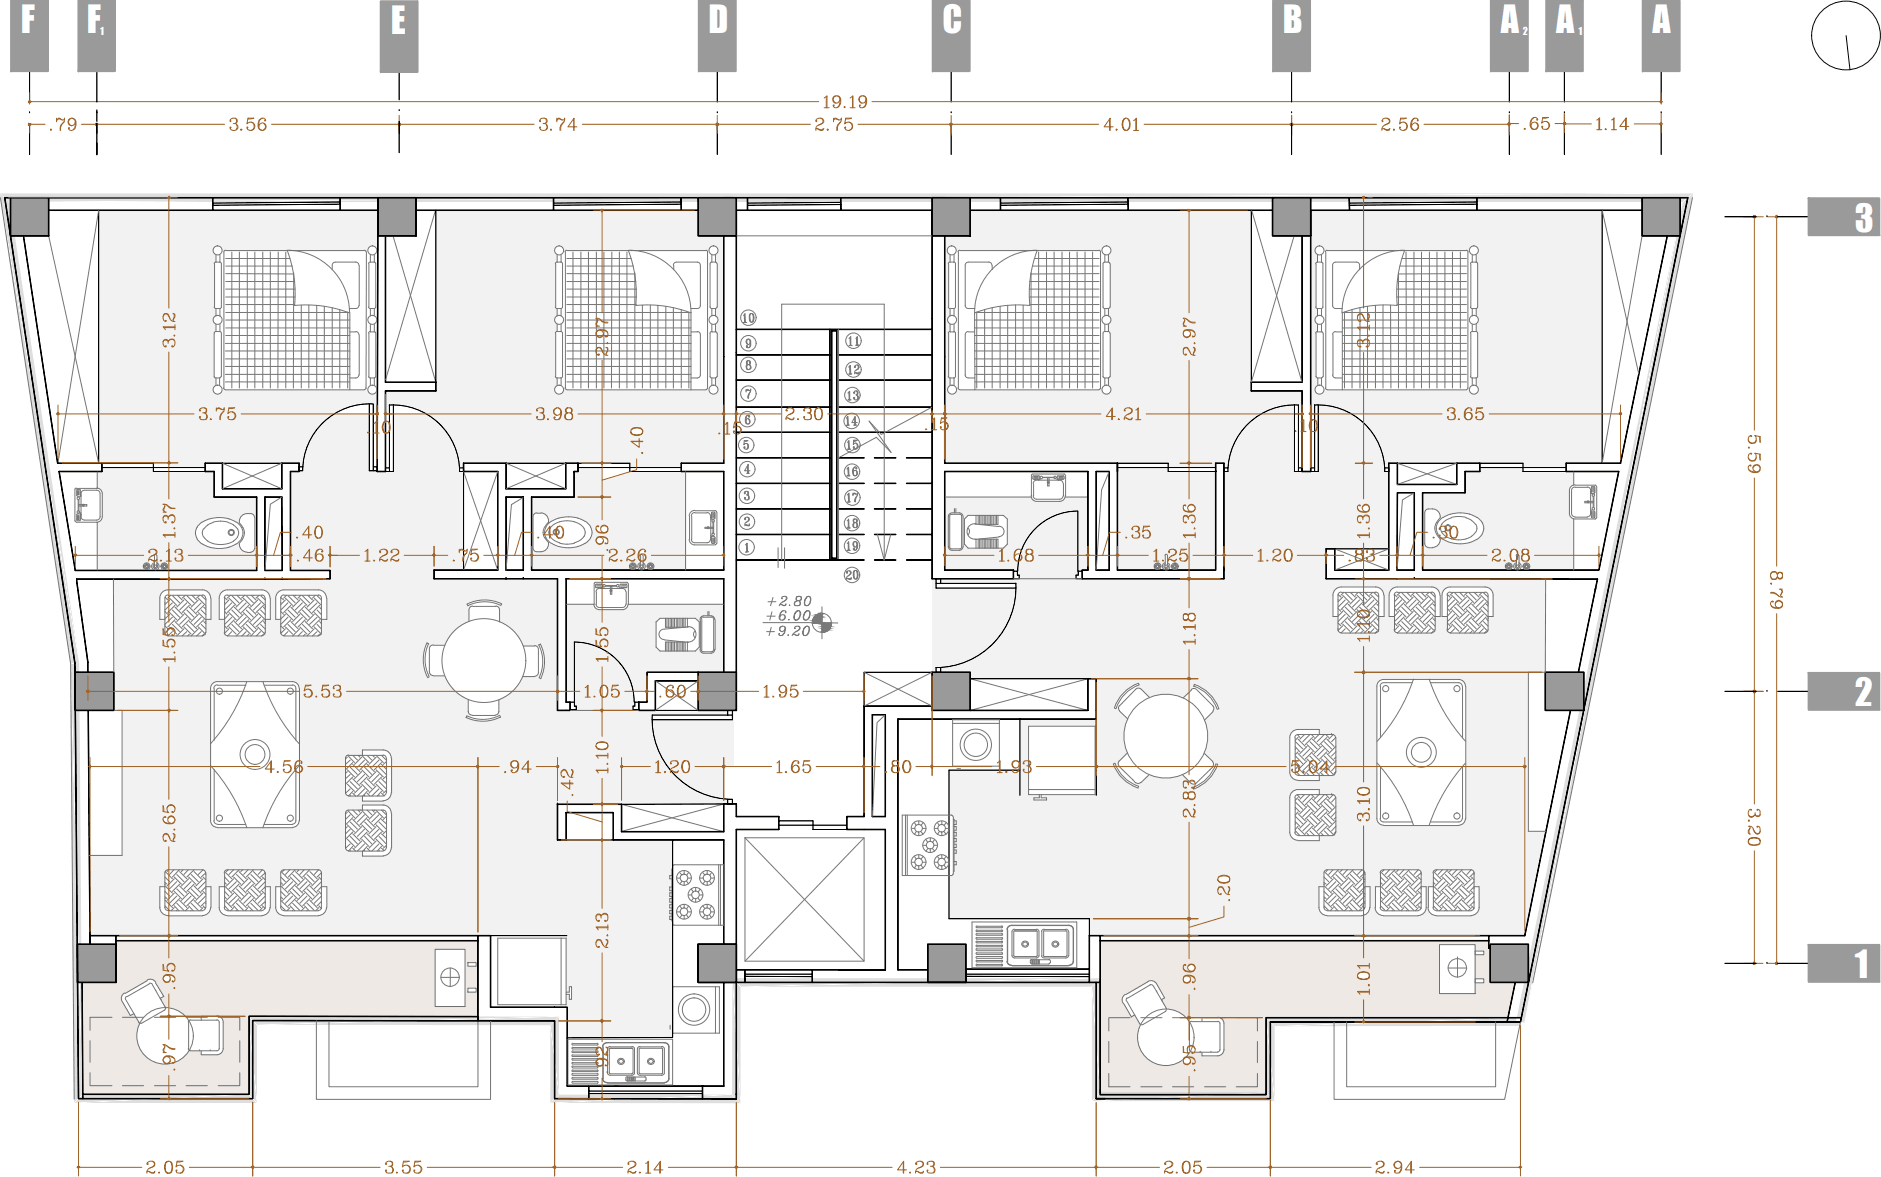 plan 2, after design - an apartment near anzali